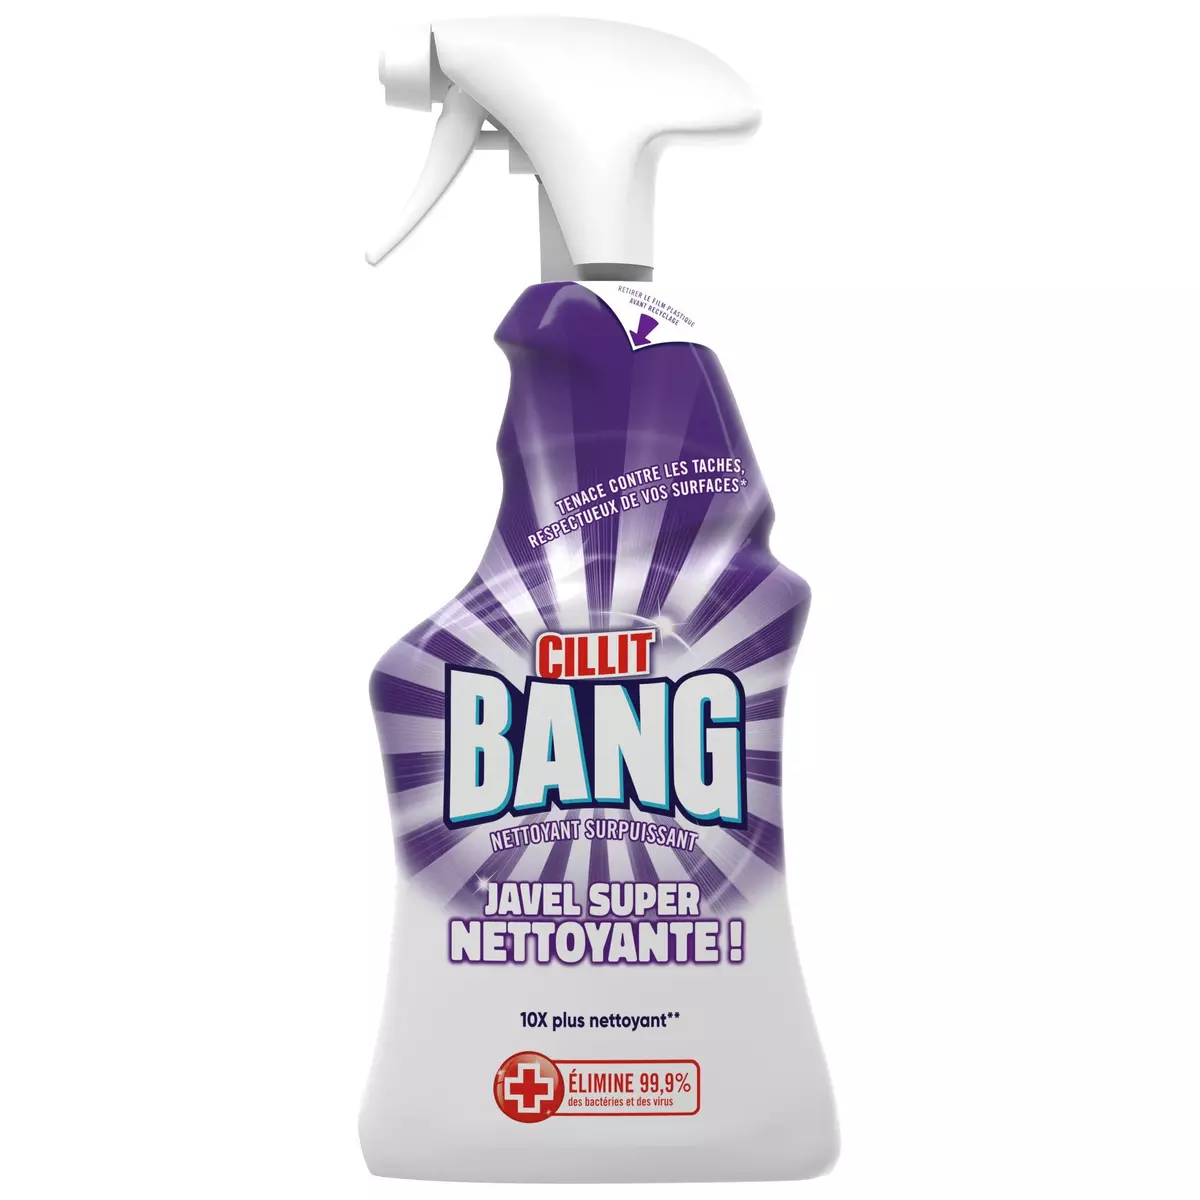 CILLIT BANG Spray nettoyant surpuissant désinfectant javel 750ml